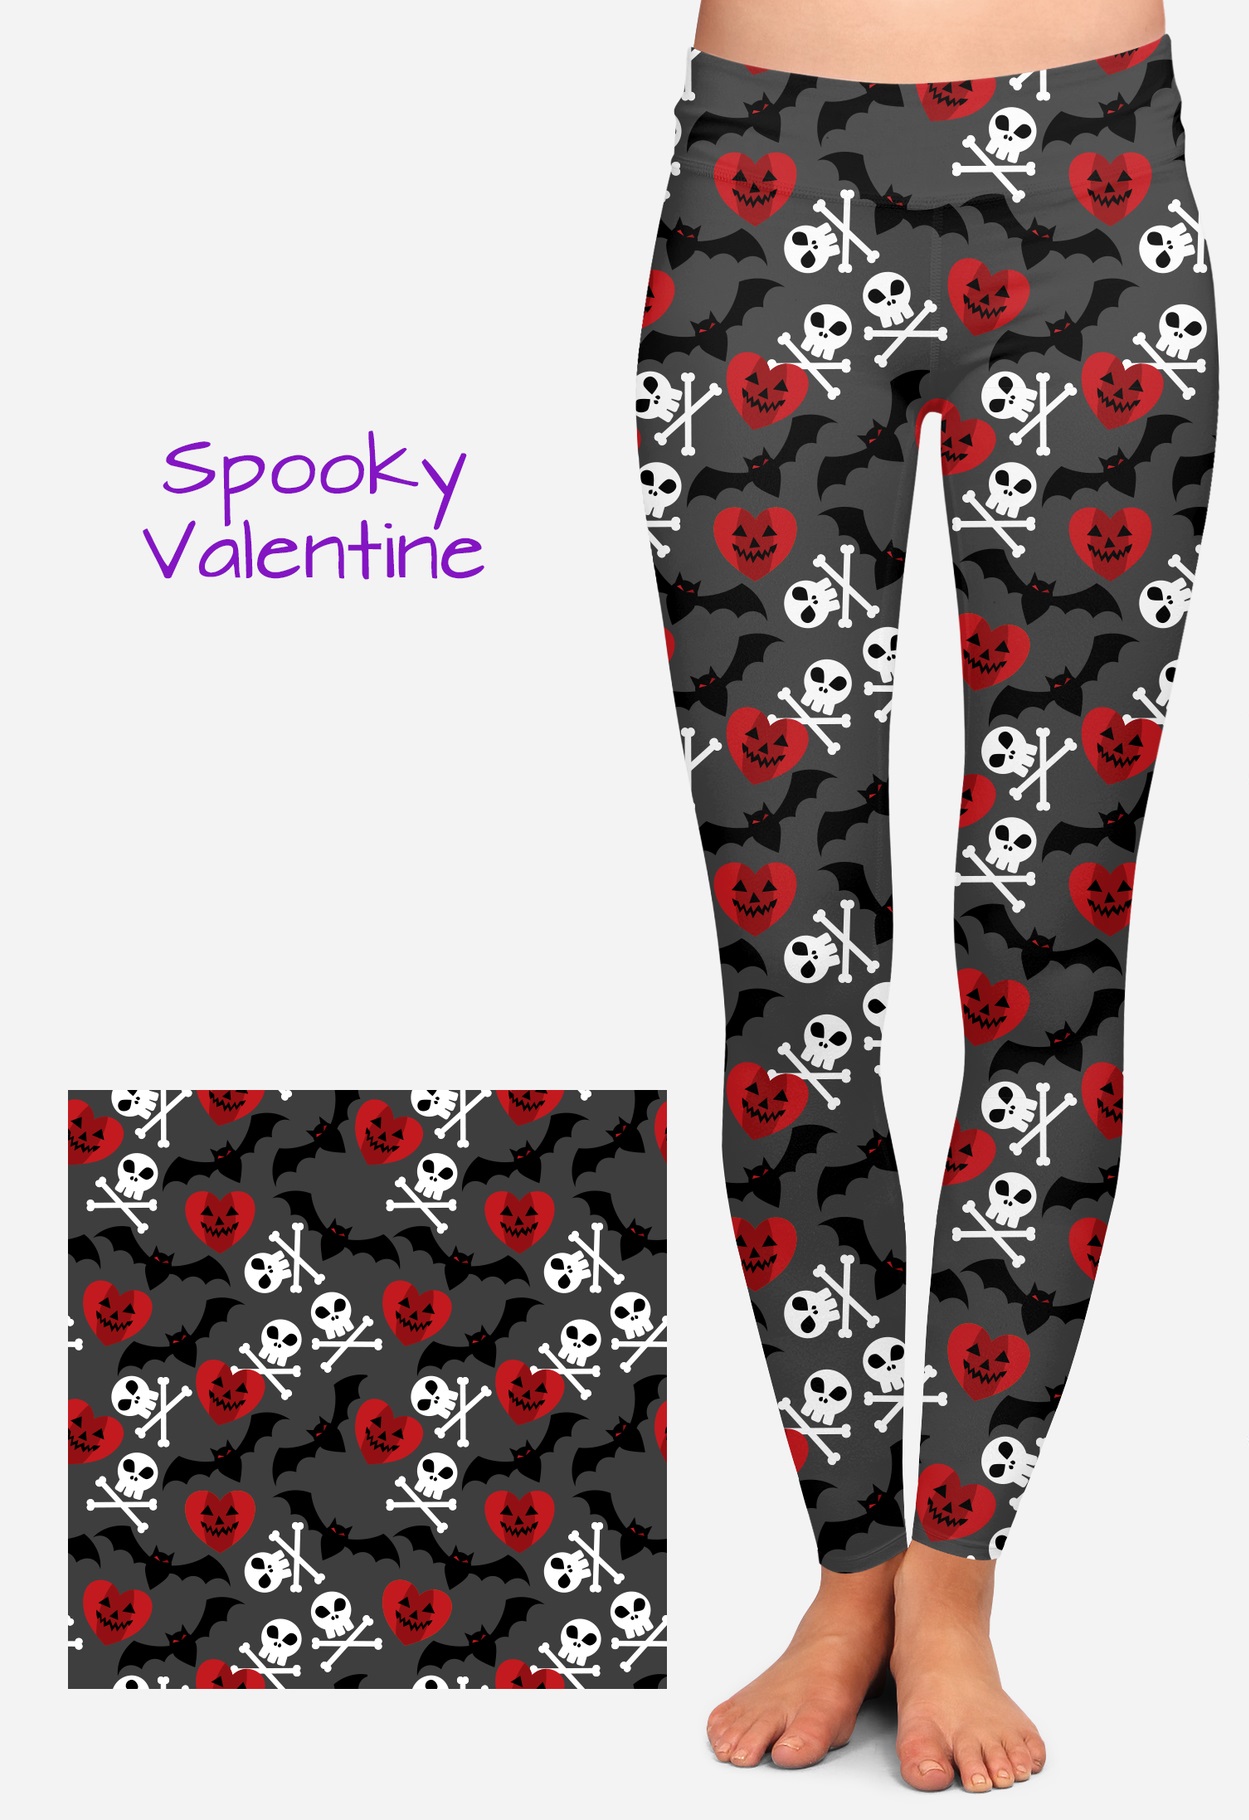 Spooky Valentine Leggings - Screamers Costumes